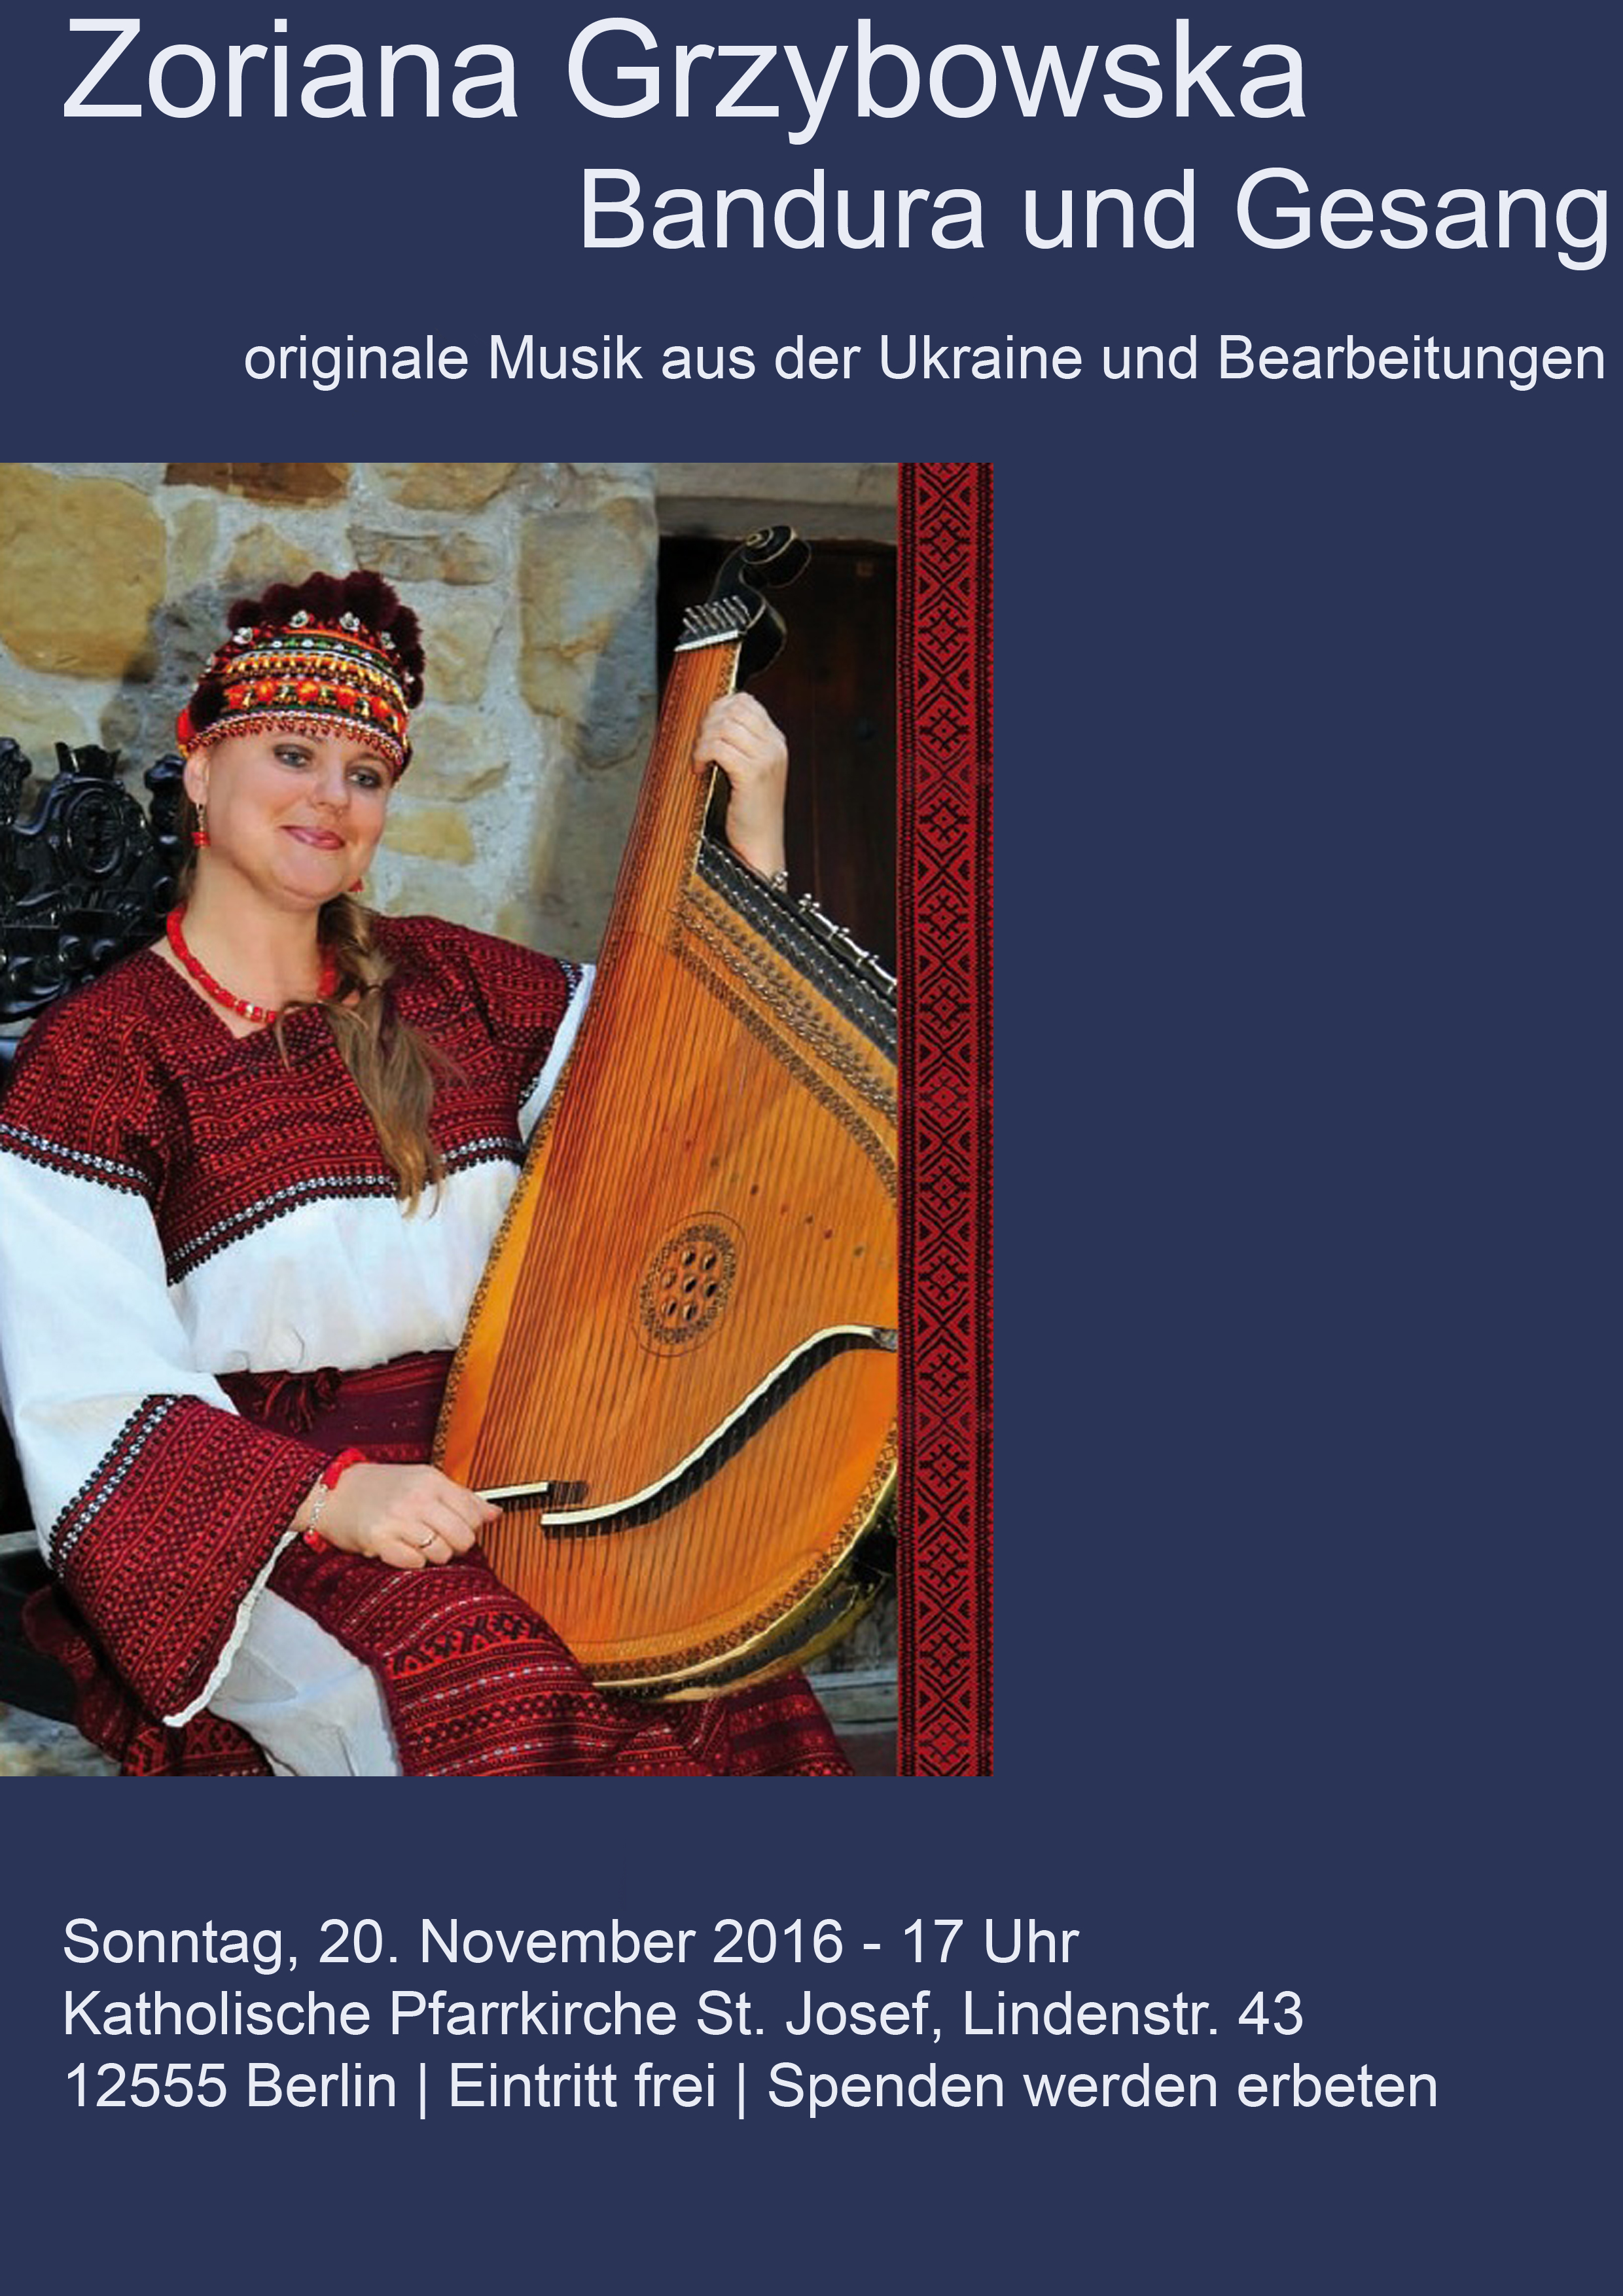 Konzert mit Zoriana Grzybowska – Bandura und Gesang – Sonntag, 20.11.16 um 17 Uhr